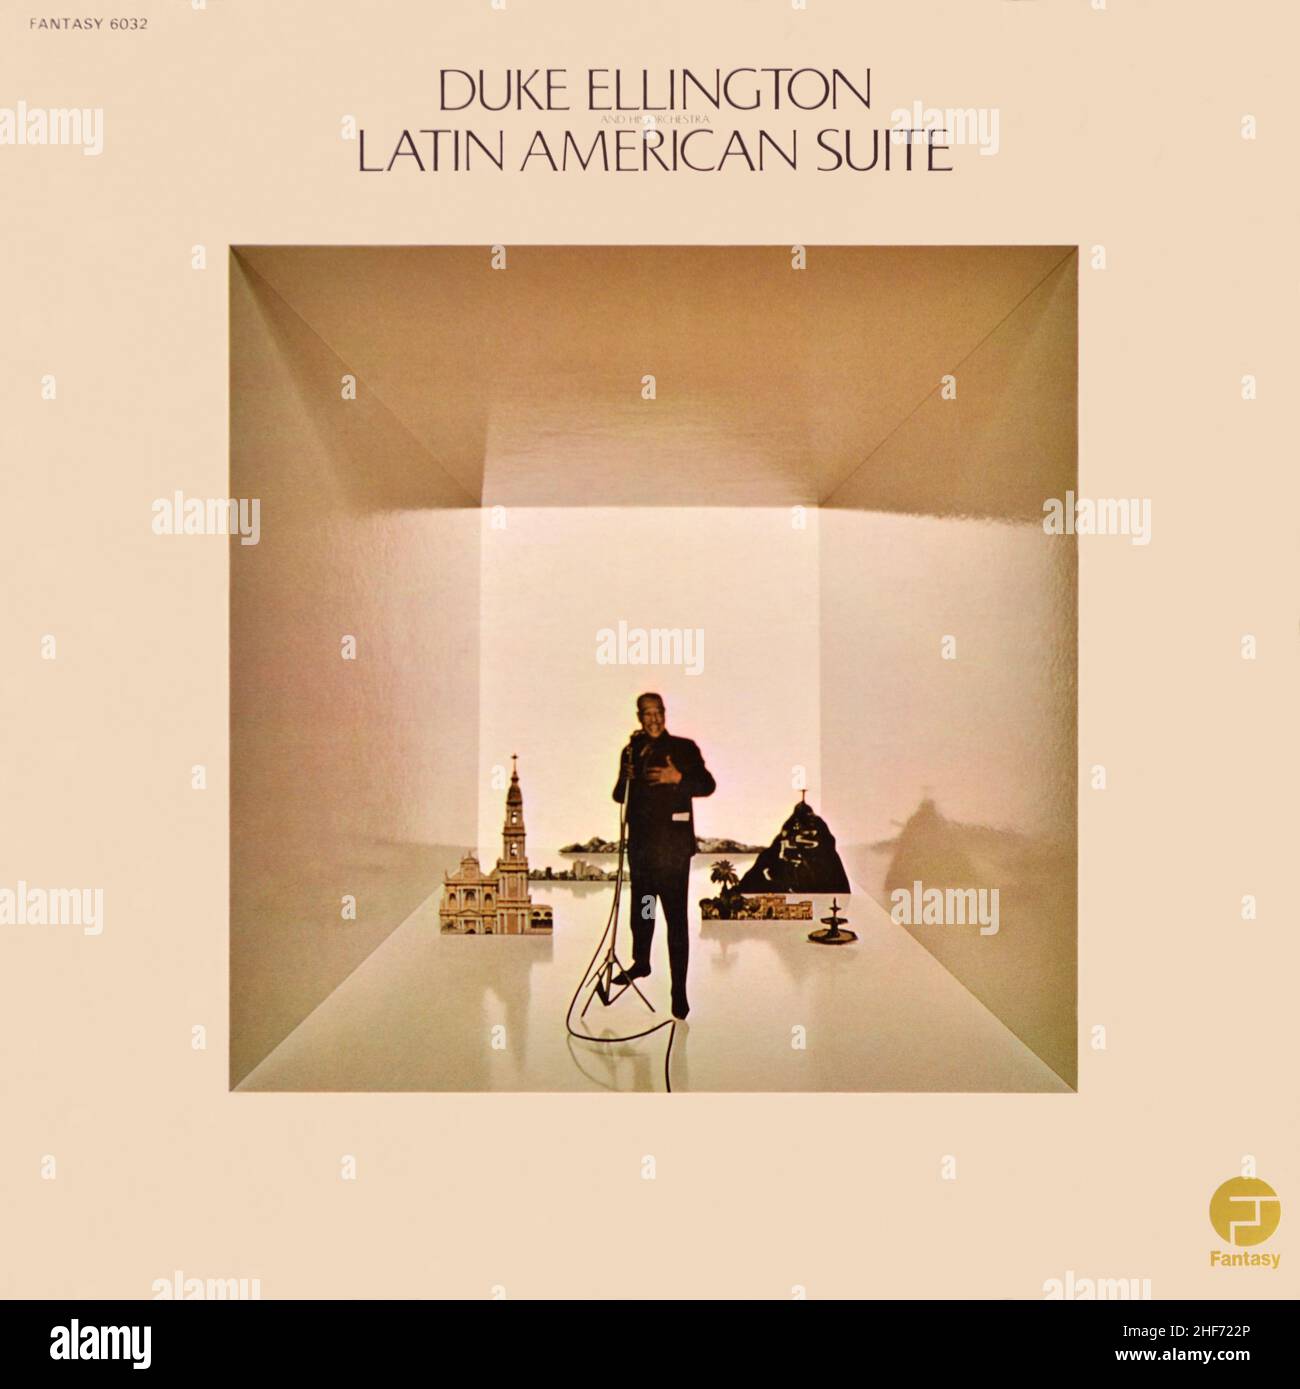 Duke Ellington et son orchestre - couverture originale de l'album en vinyle - Latino American Suite - 1972 Banque D'Images